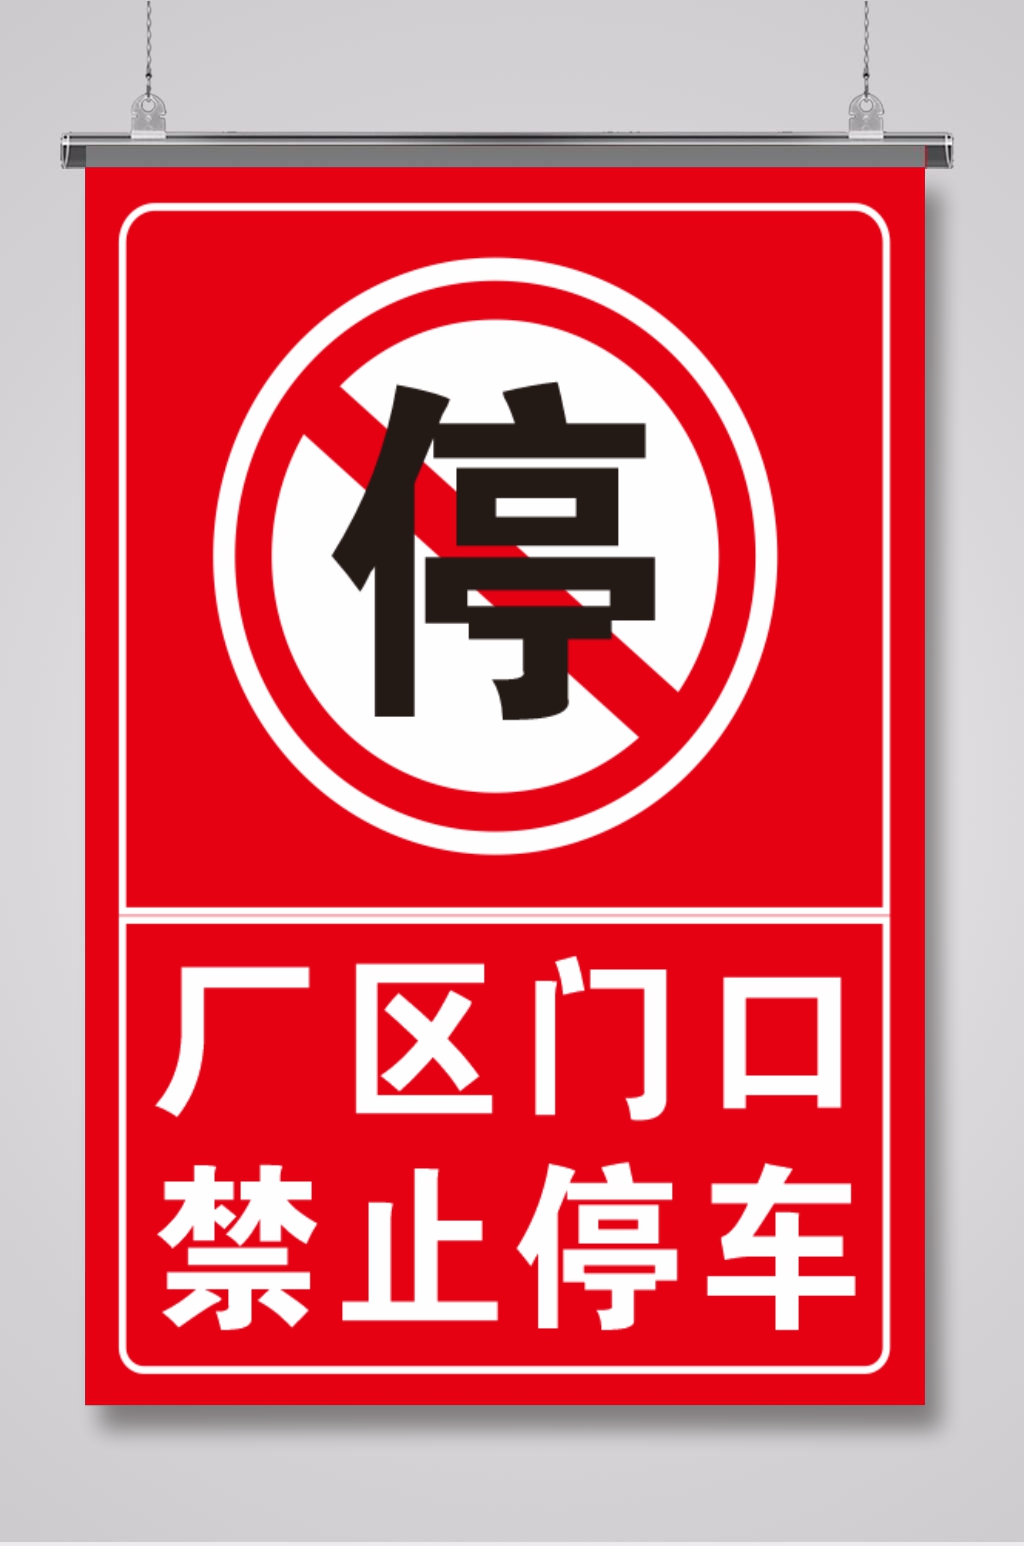 工地门口禁止停车标语图片